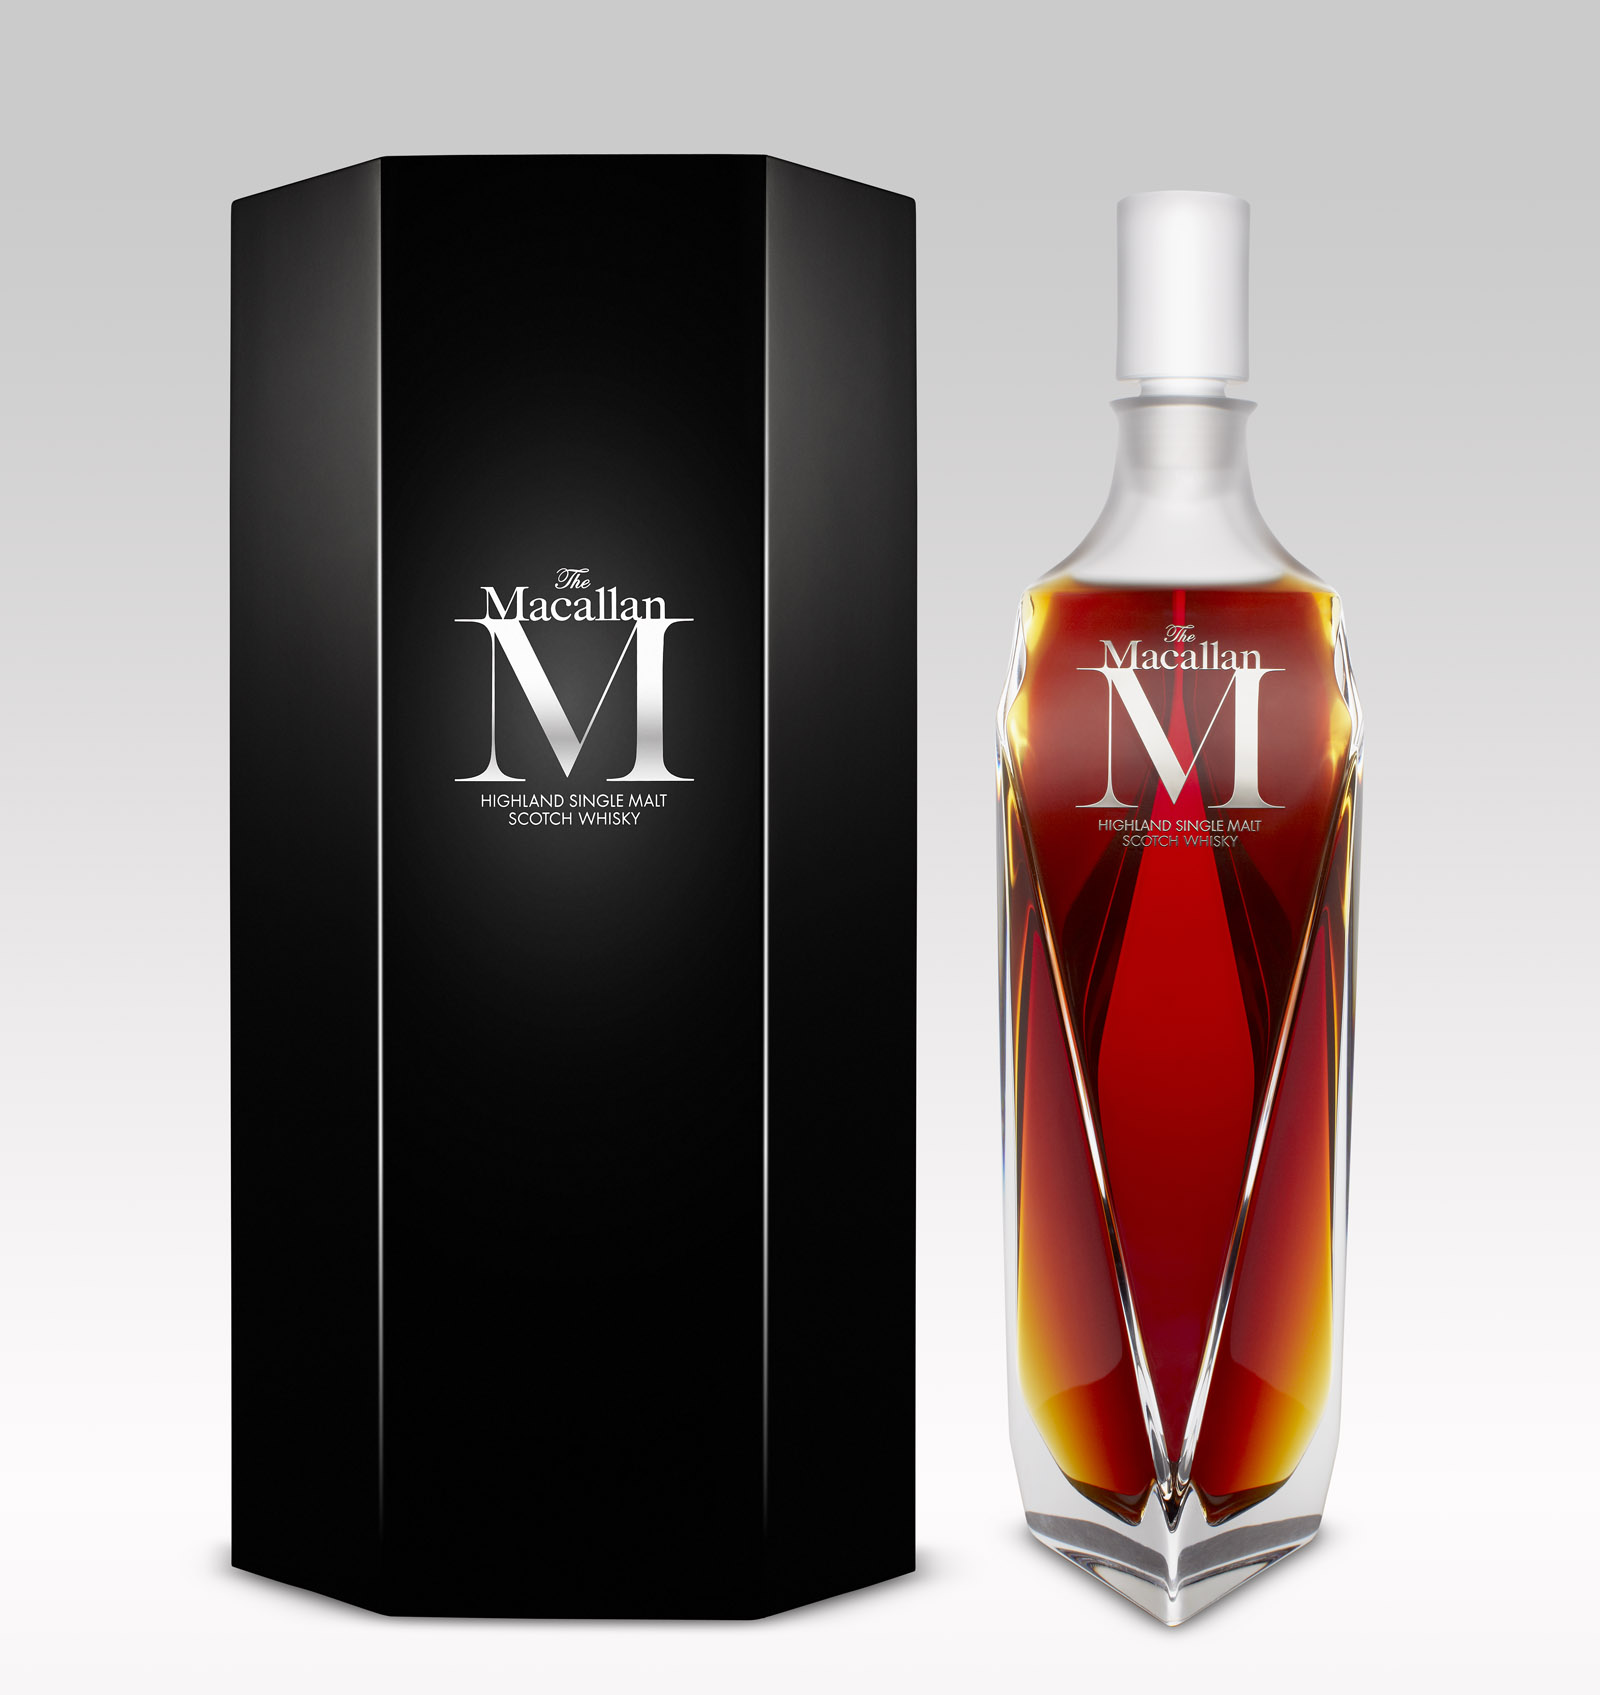 Macallan+Decanter+Pack&+Bottle+Steveos+1